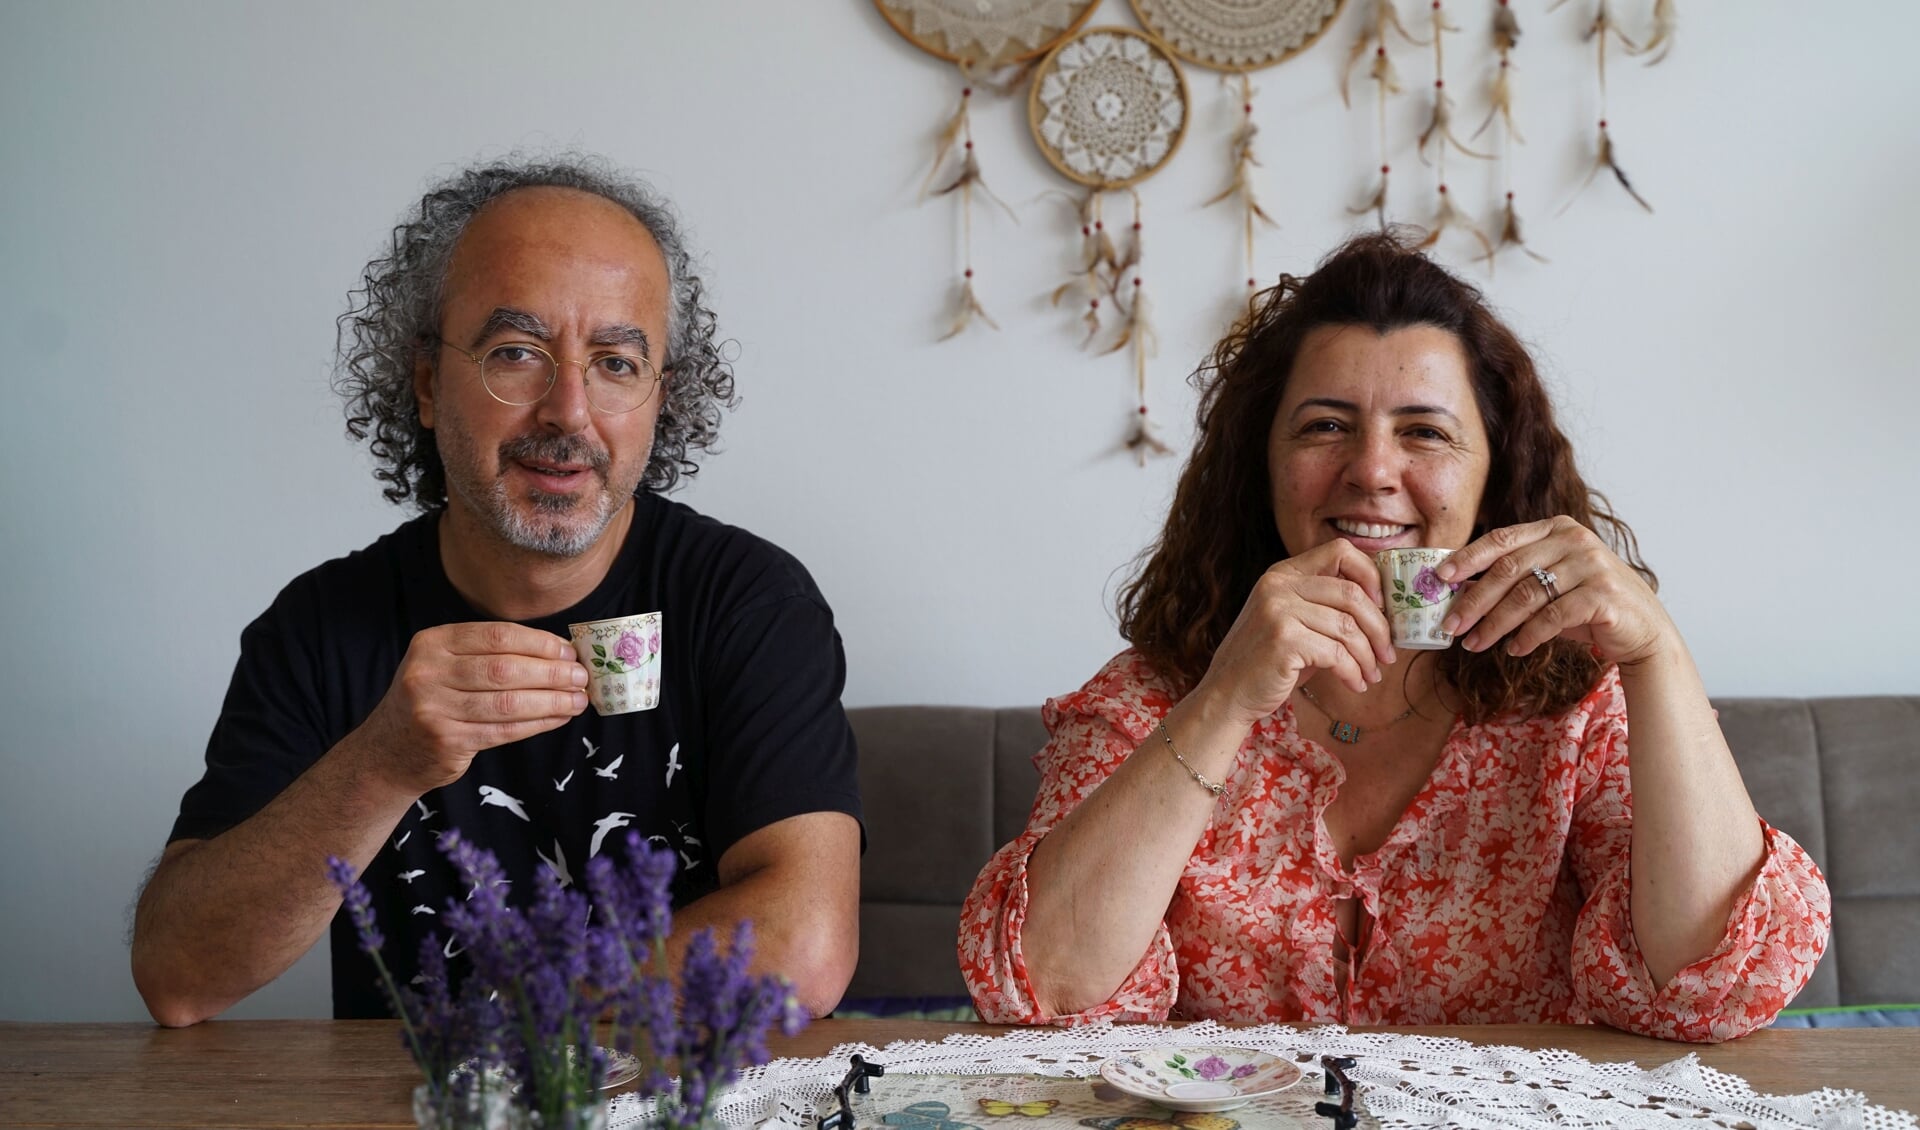  Ferhat Micoogullari en zijn vrouw Özlem.